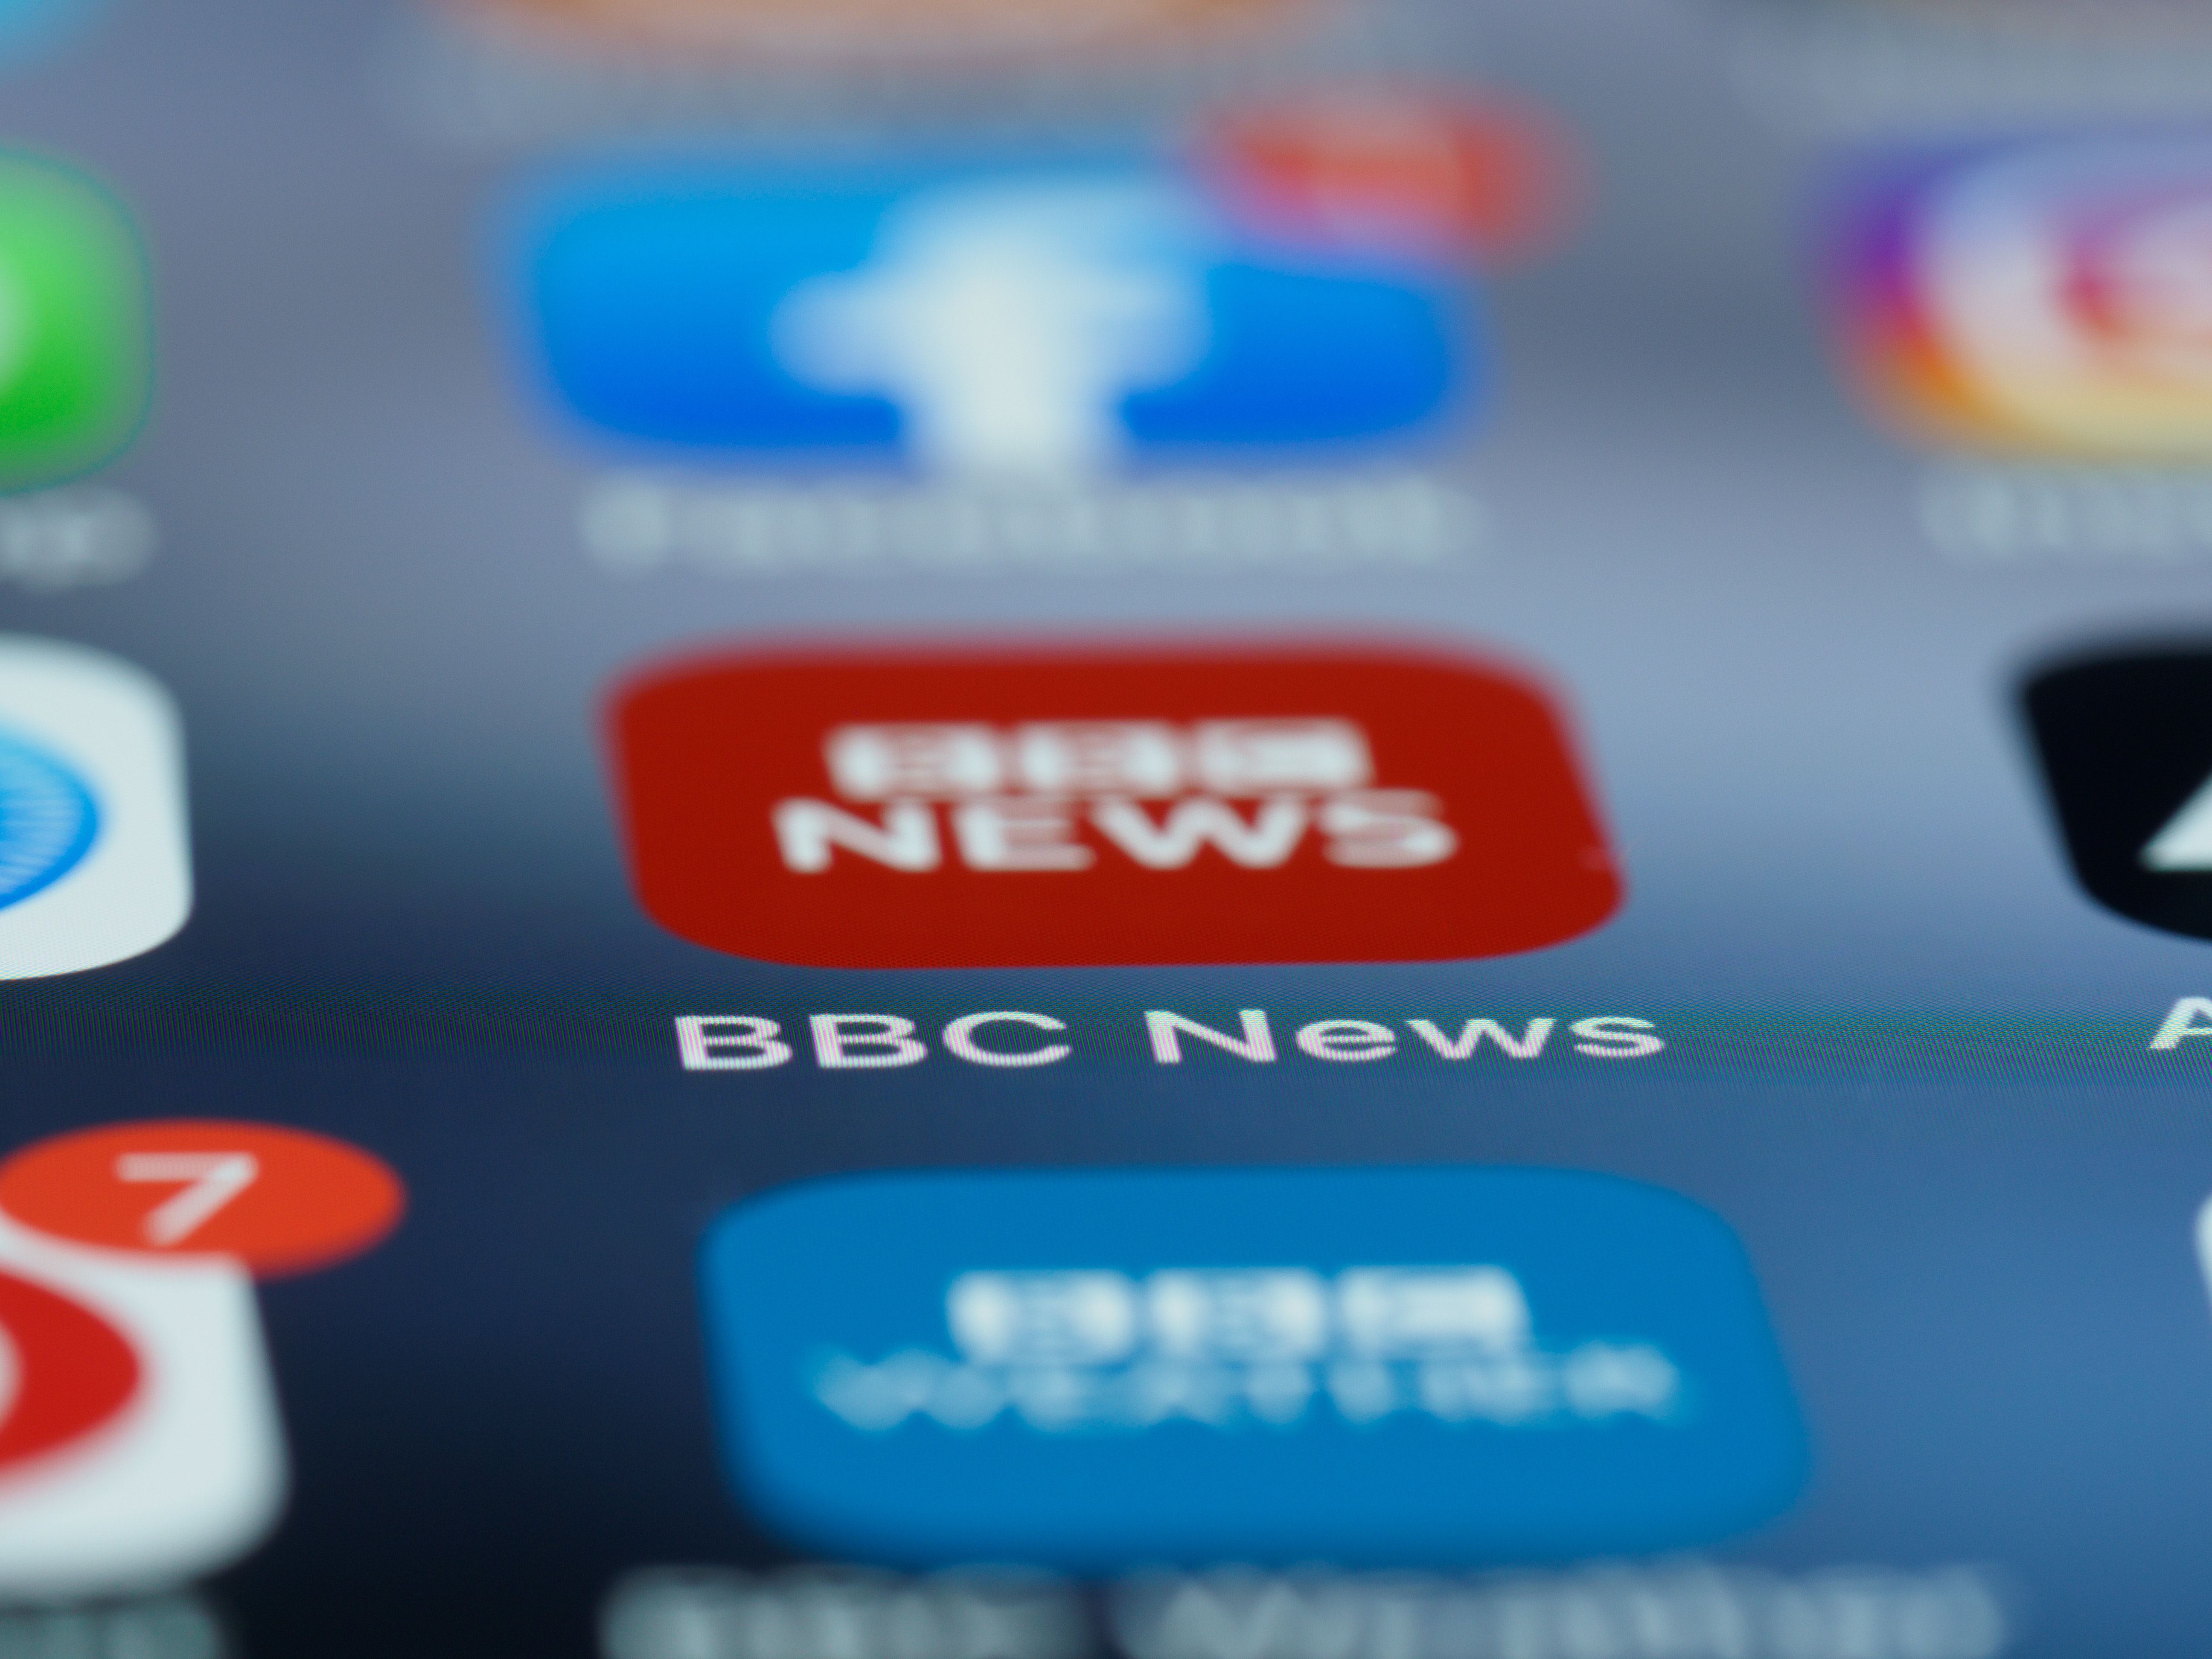 Σκάνδαλο BBC: Δεύτερη καταγγελία για τον γνωστό παρουσιαστή - Απειλητικά και υβριστικά μηνύματα σε 20χρονο